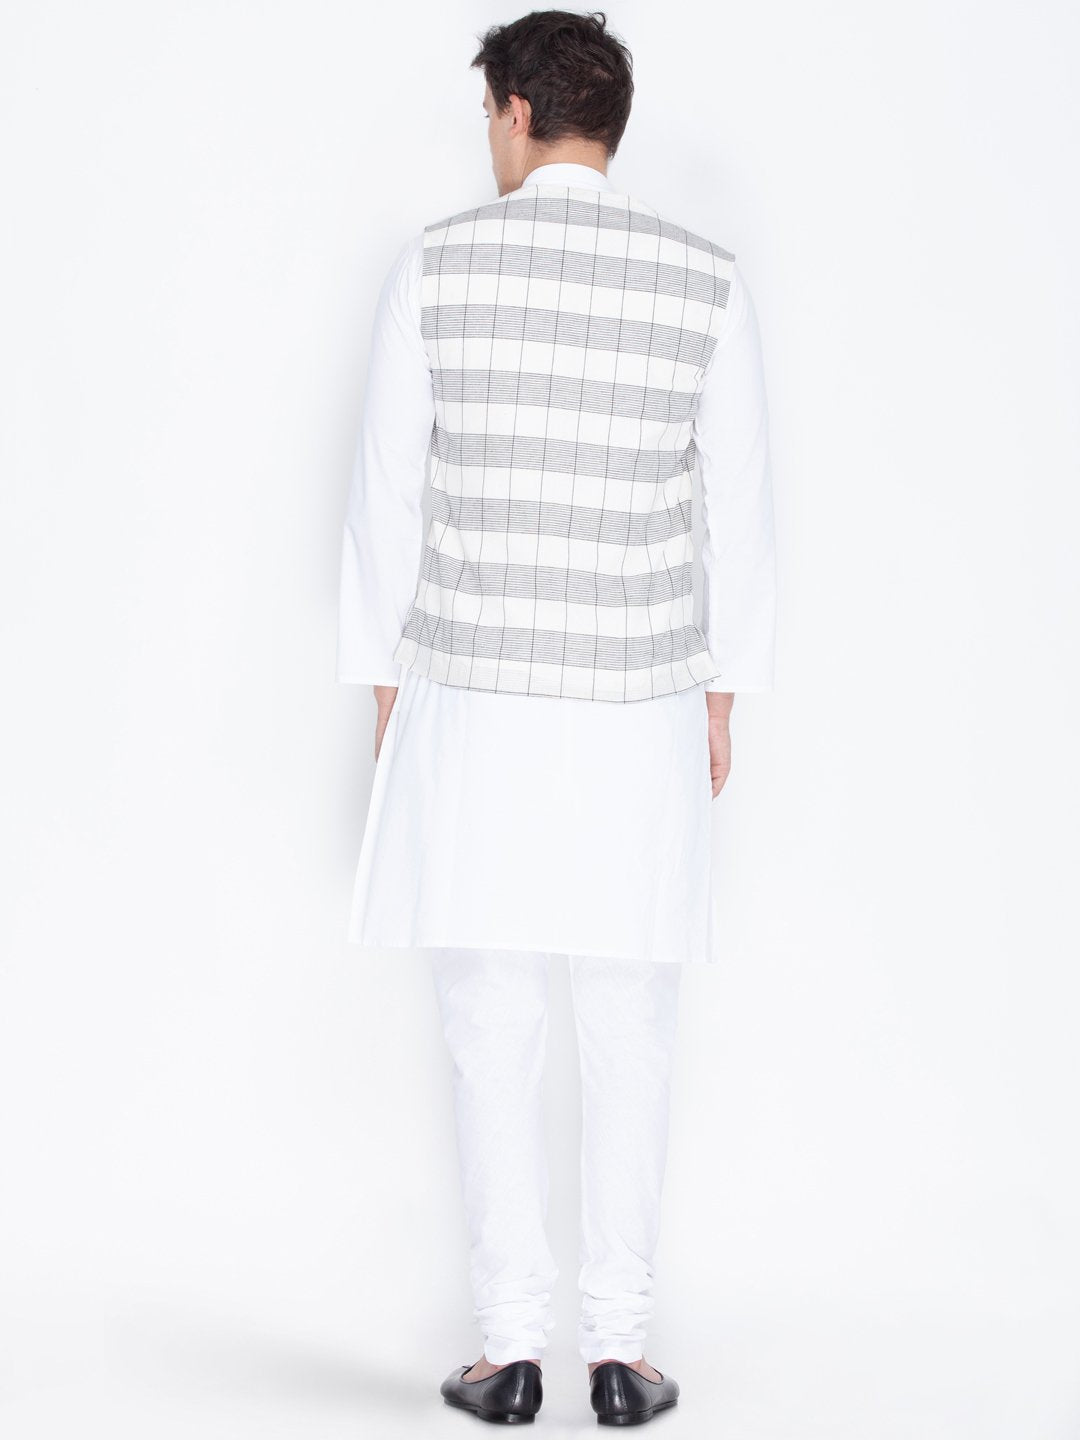 Men's White Cotton Kurta, Ethnic Jacket and Pyjama Set